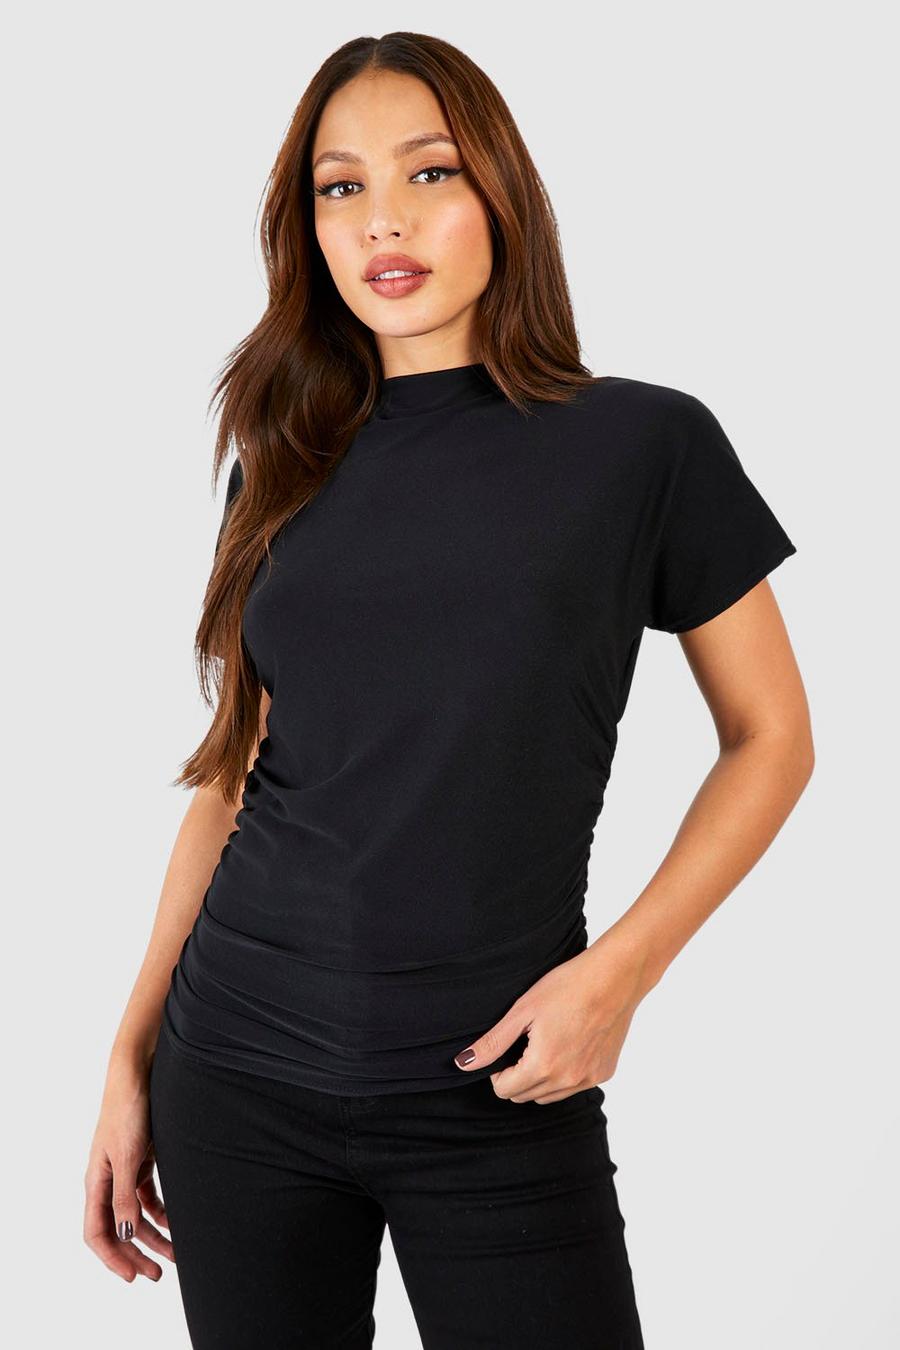 Camiseta Tall Premium holgada suave con lateral fruncido, Black